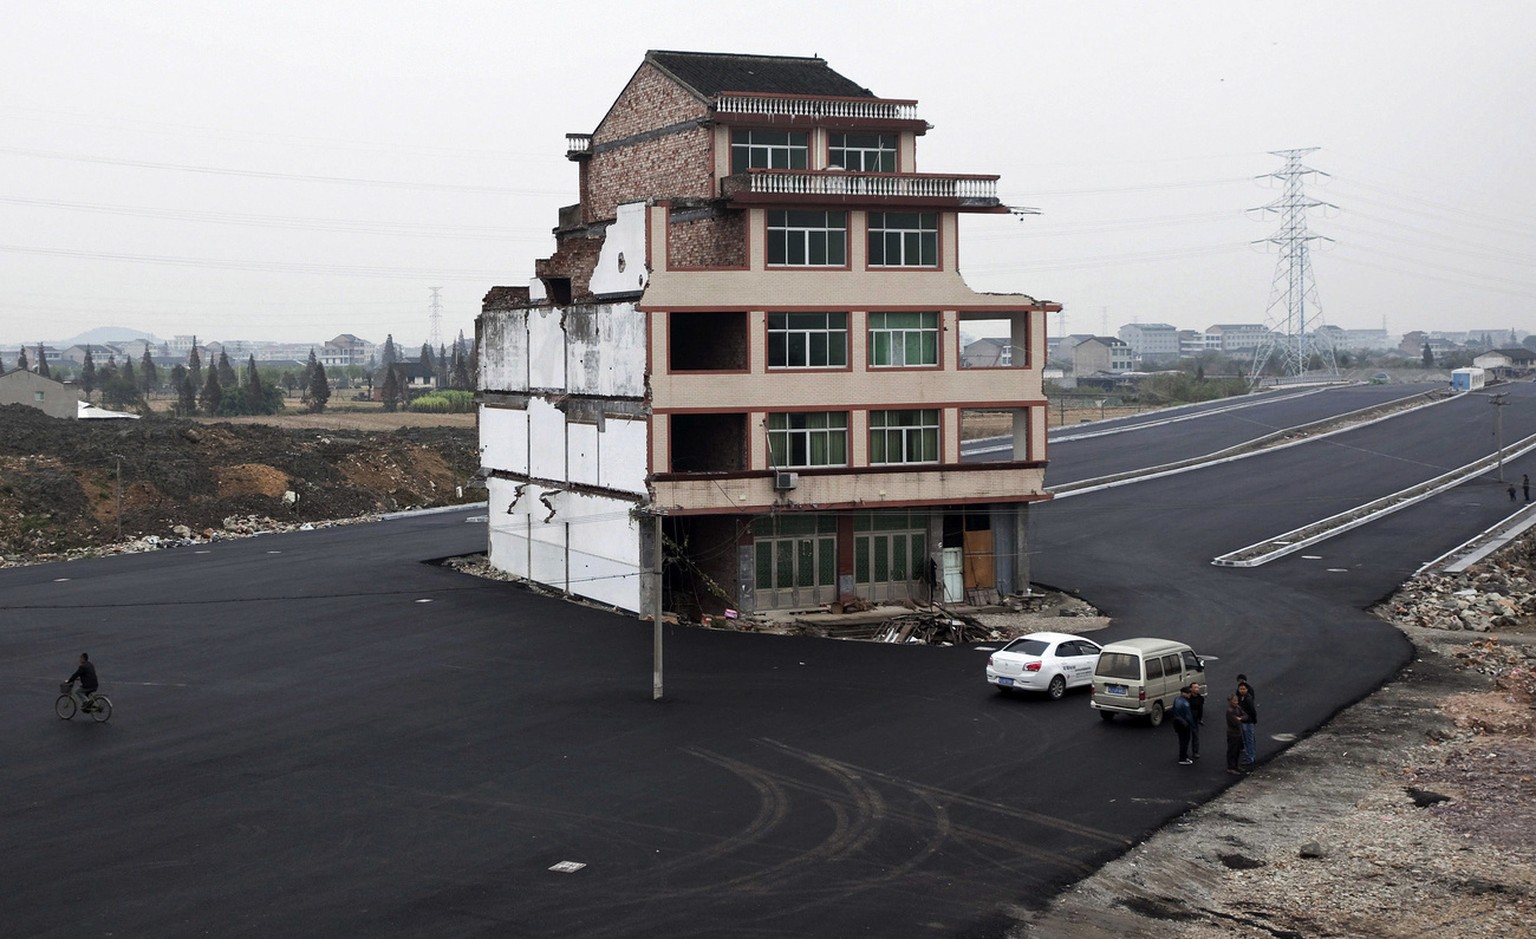 Hier siehst du, was passiert, wenn du dich in China weigerst, dein Haus dem Staat zu überlassen, obwohl der eine Autobahn geplant hat.